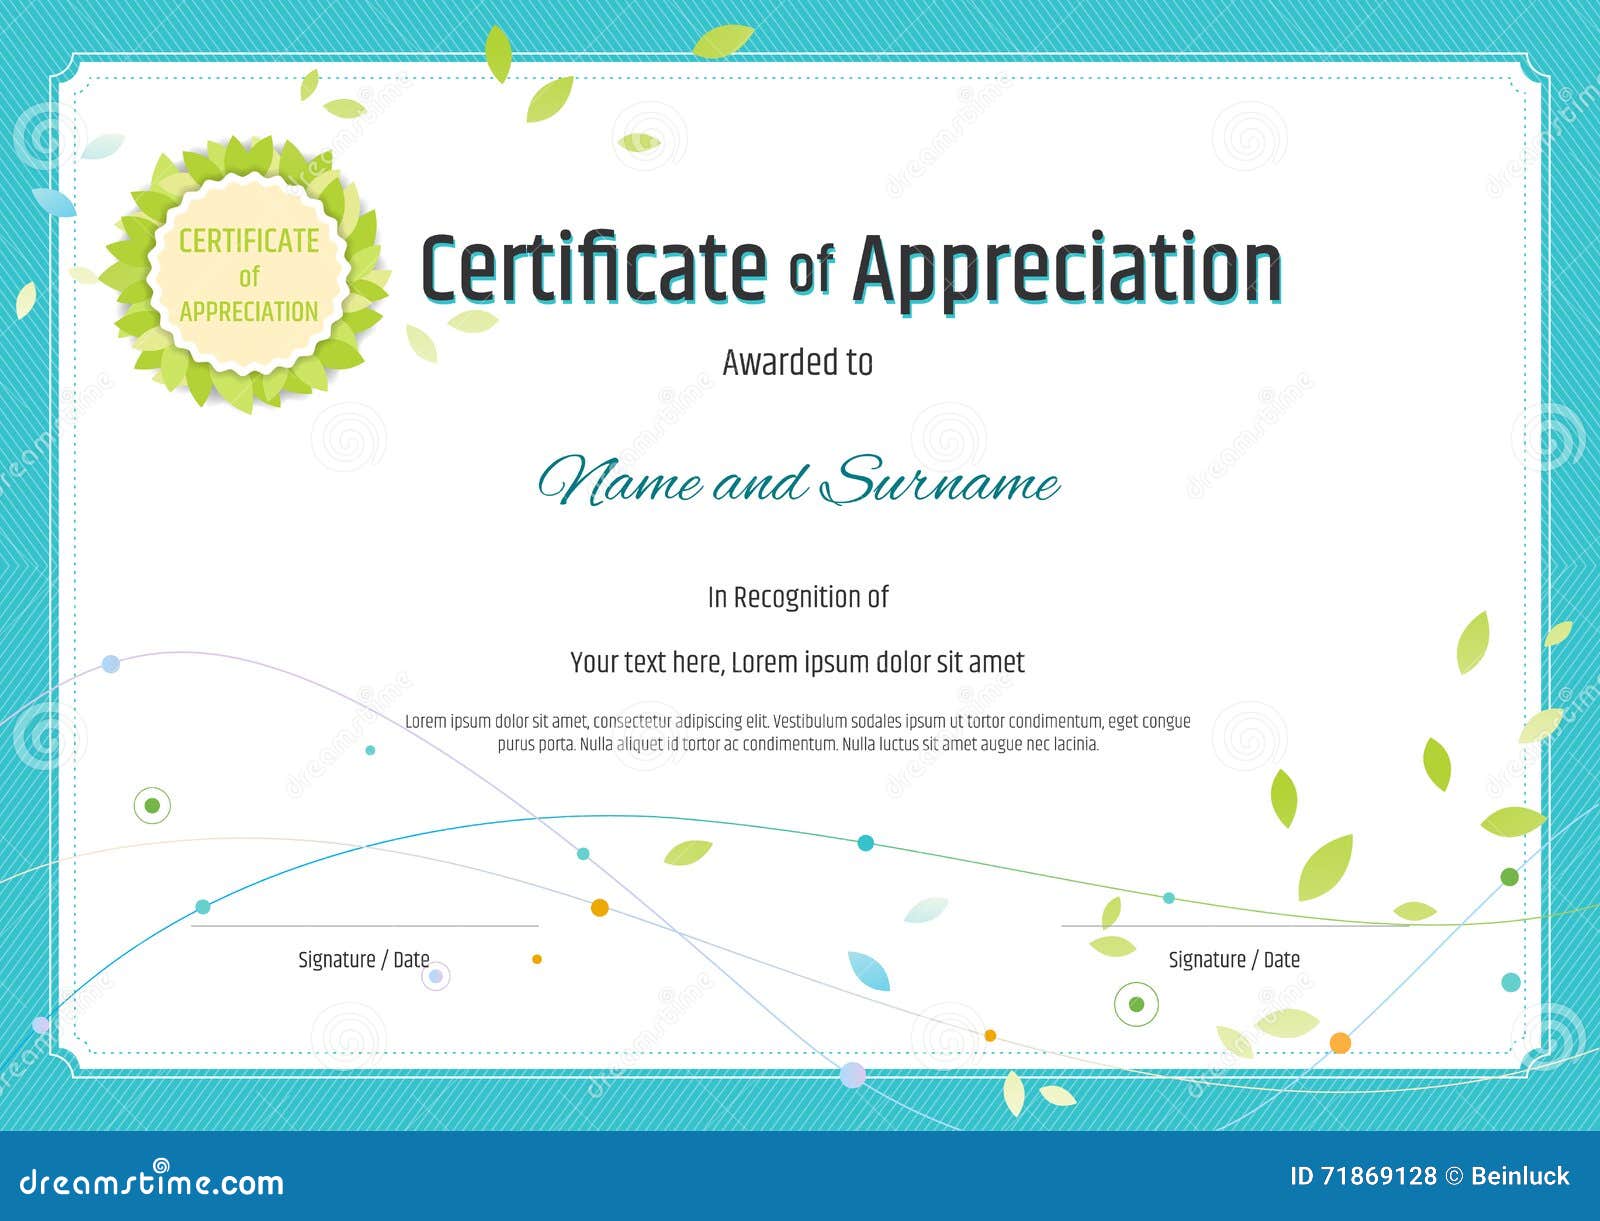 Certificate of Appreciation Template in Nature Theme with Green For Free Certificate Of Appreciation Template Downloads